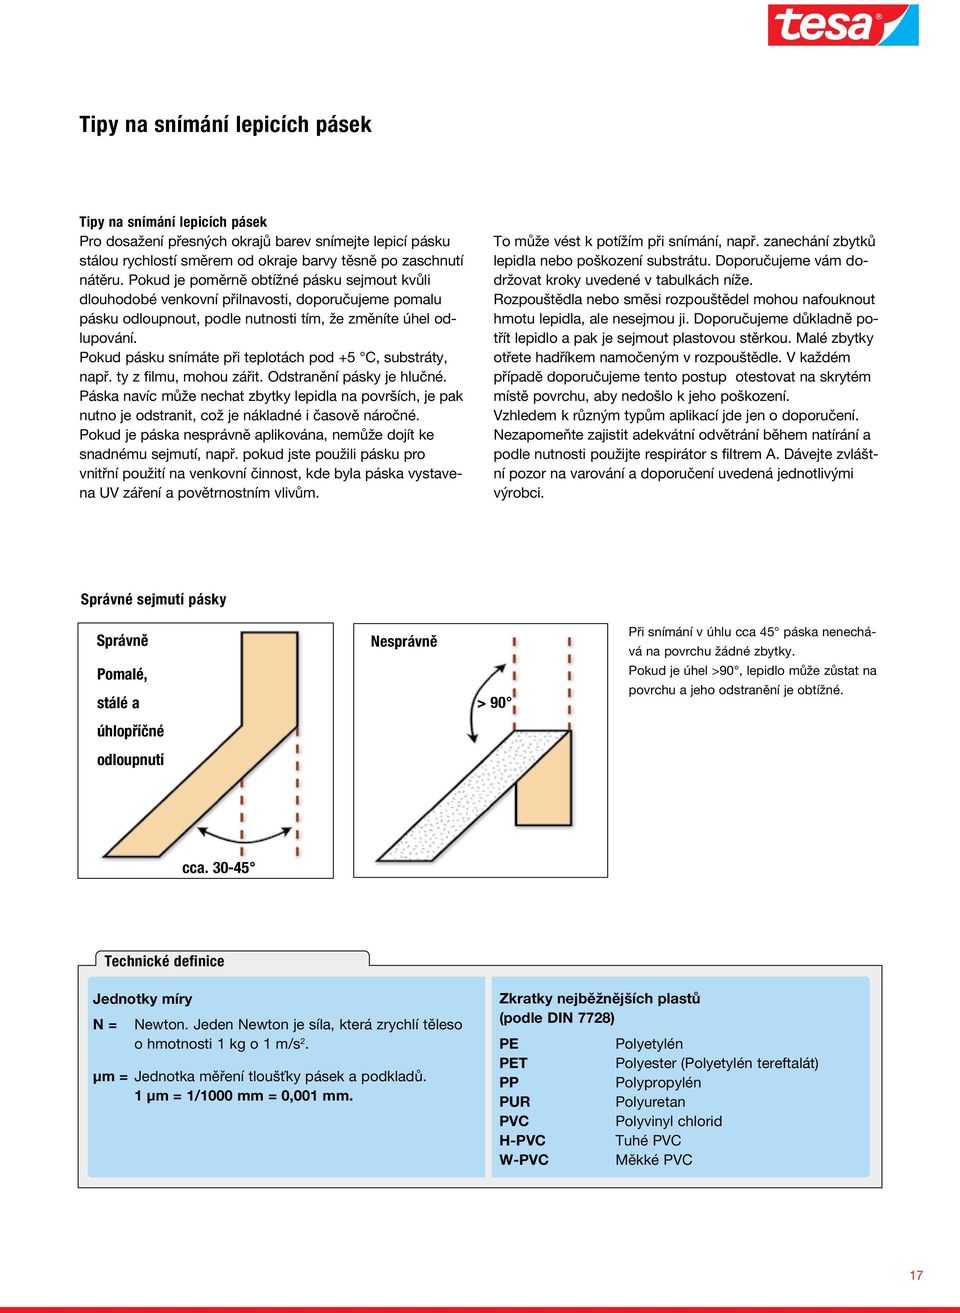 tesa Samolepicí pásky Využití samolepicích pásek v průmyslu KATALOG VÝROBKŮ  - PDF Free Download